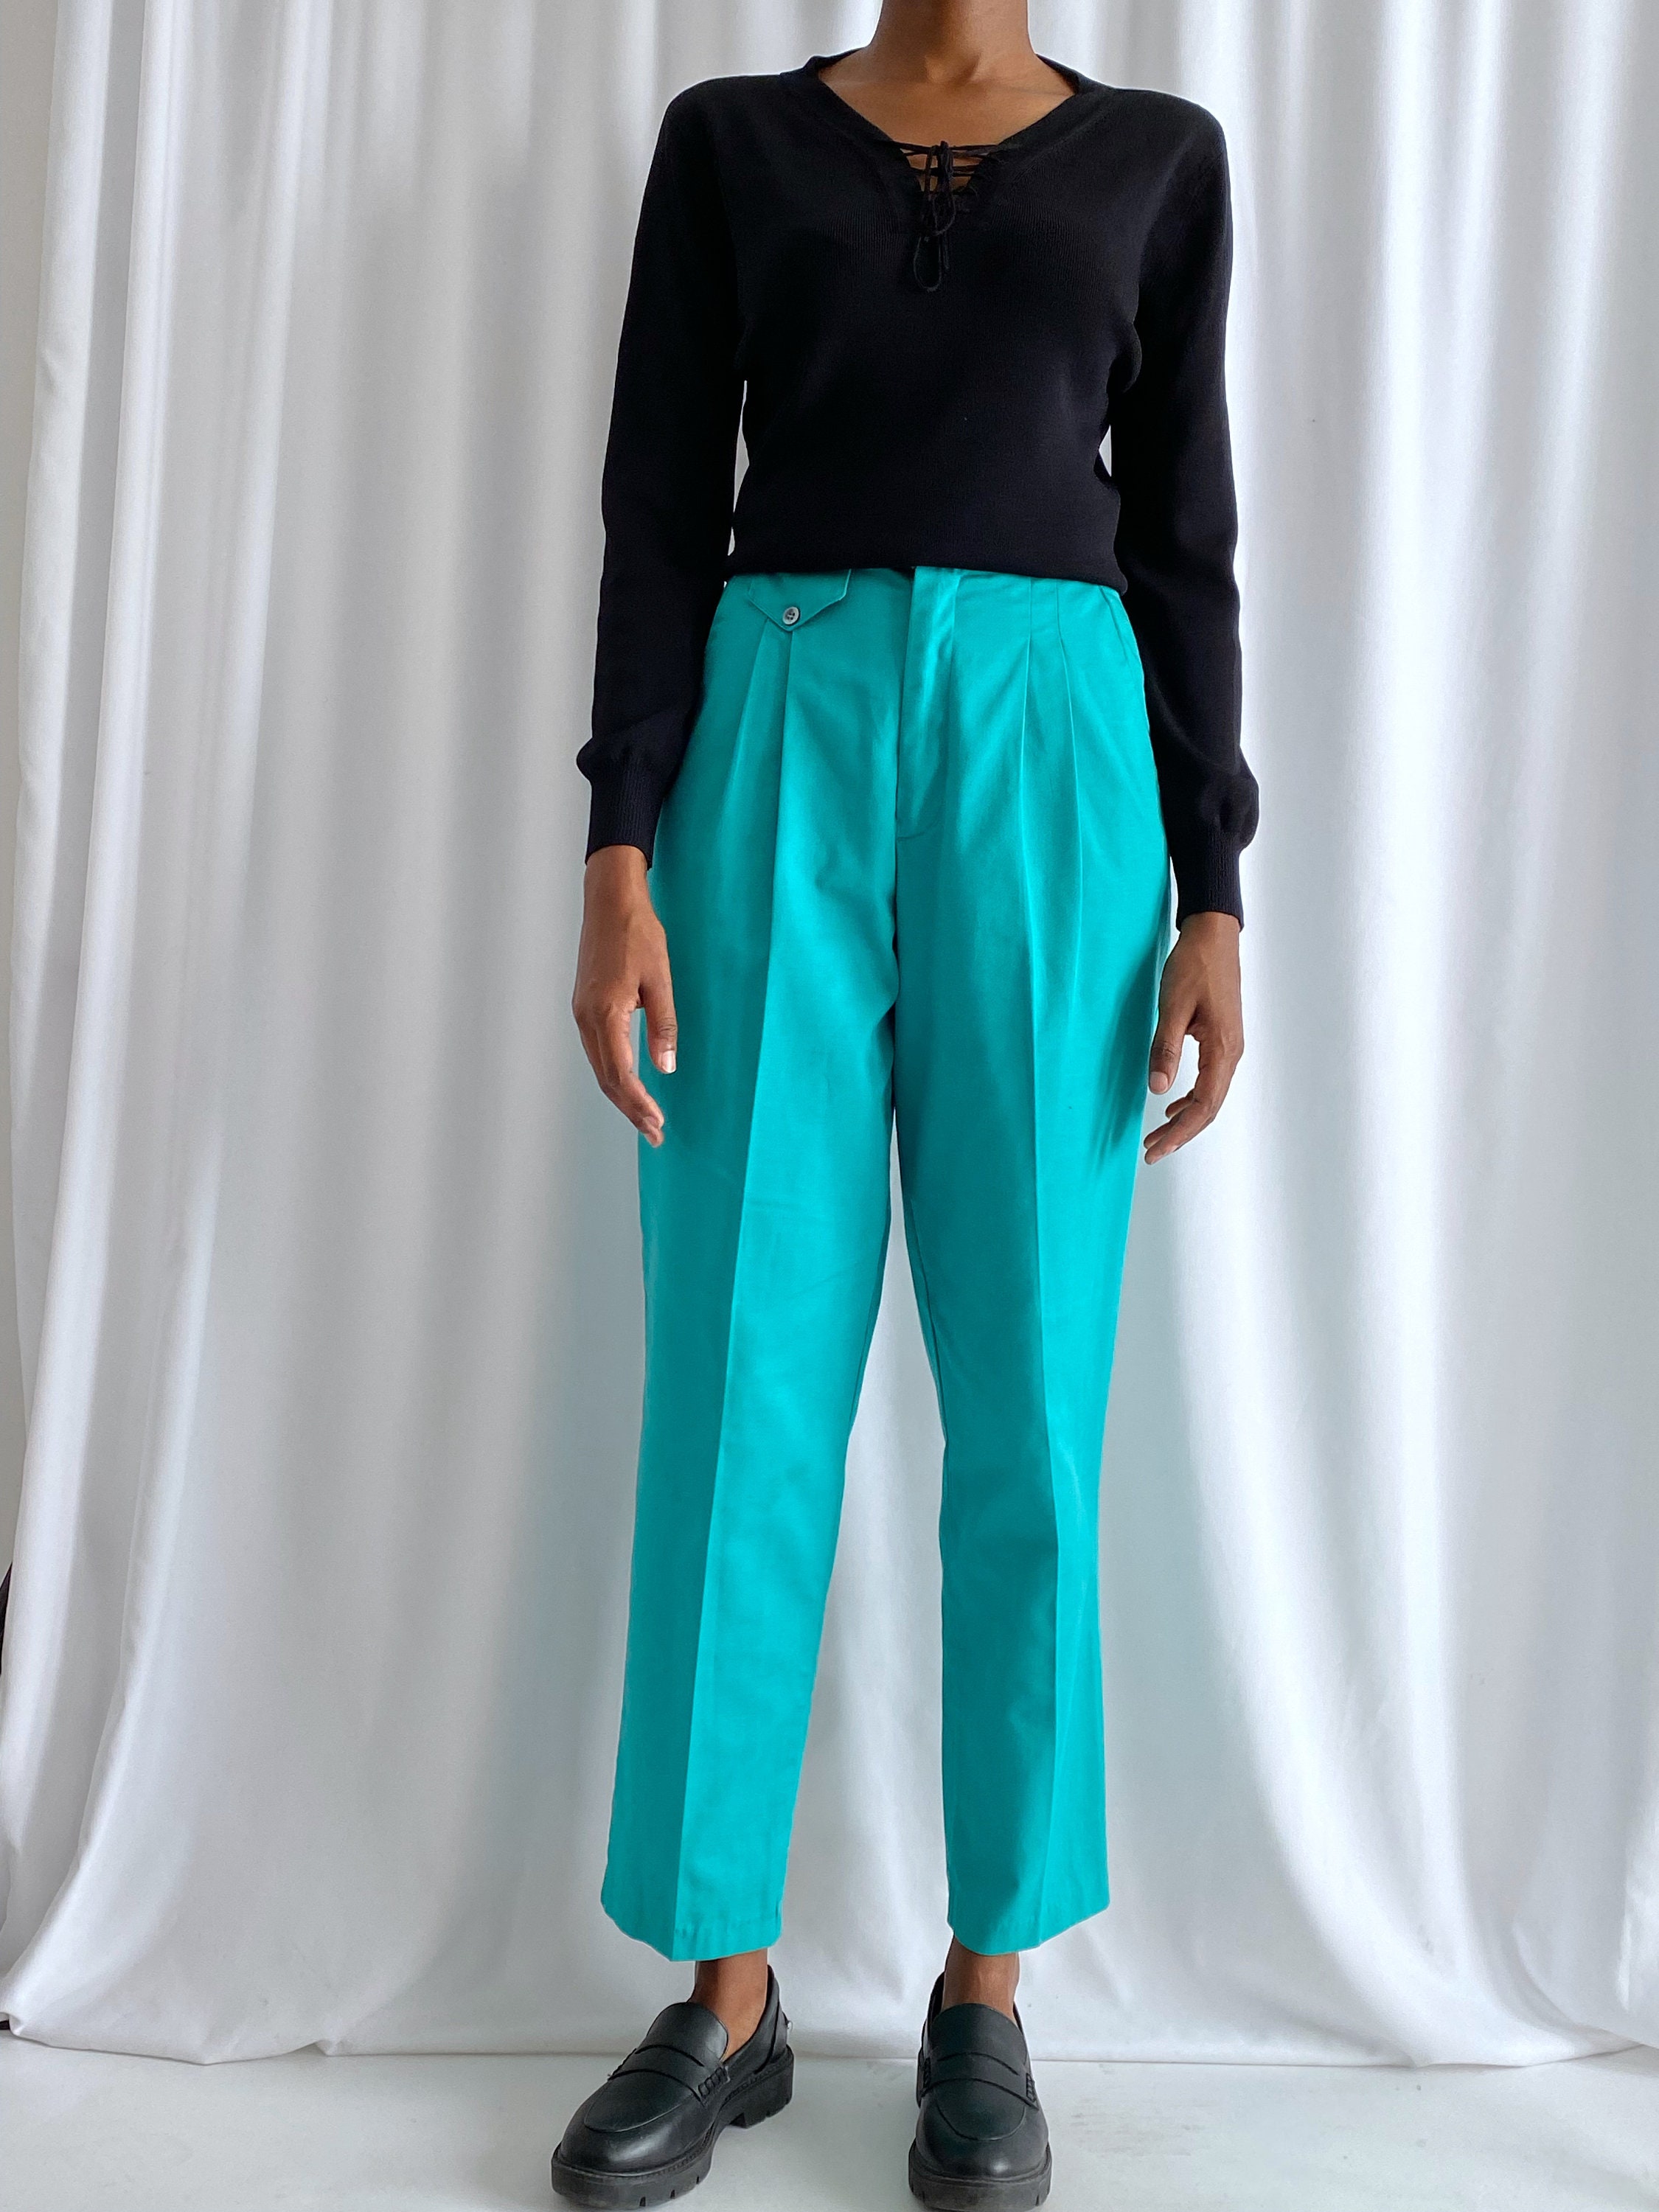 Arabian Wide Legs Women's Baggy Carrot Pants, Casual, Women – Tatreez Bazaar